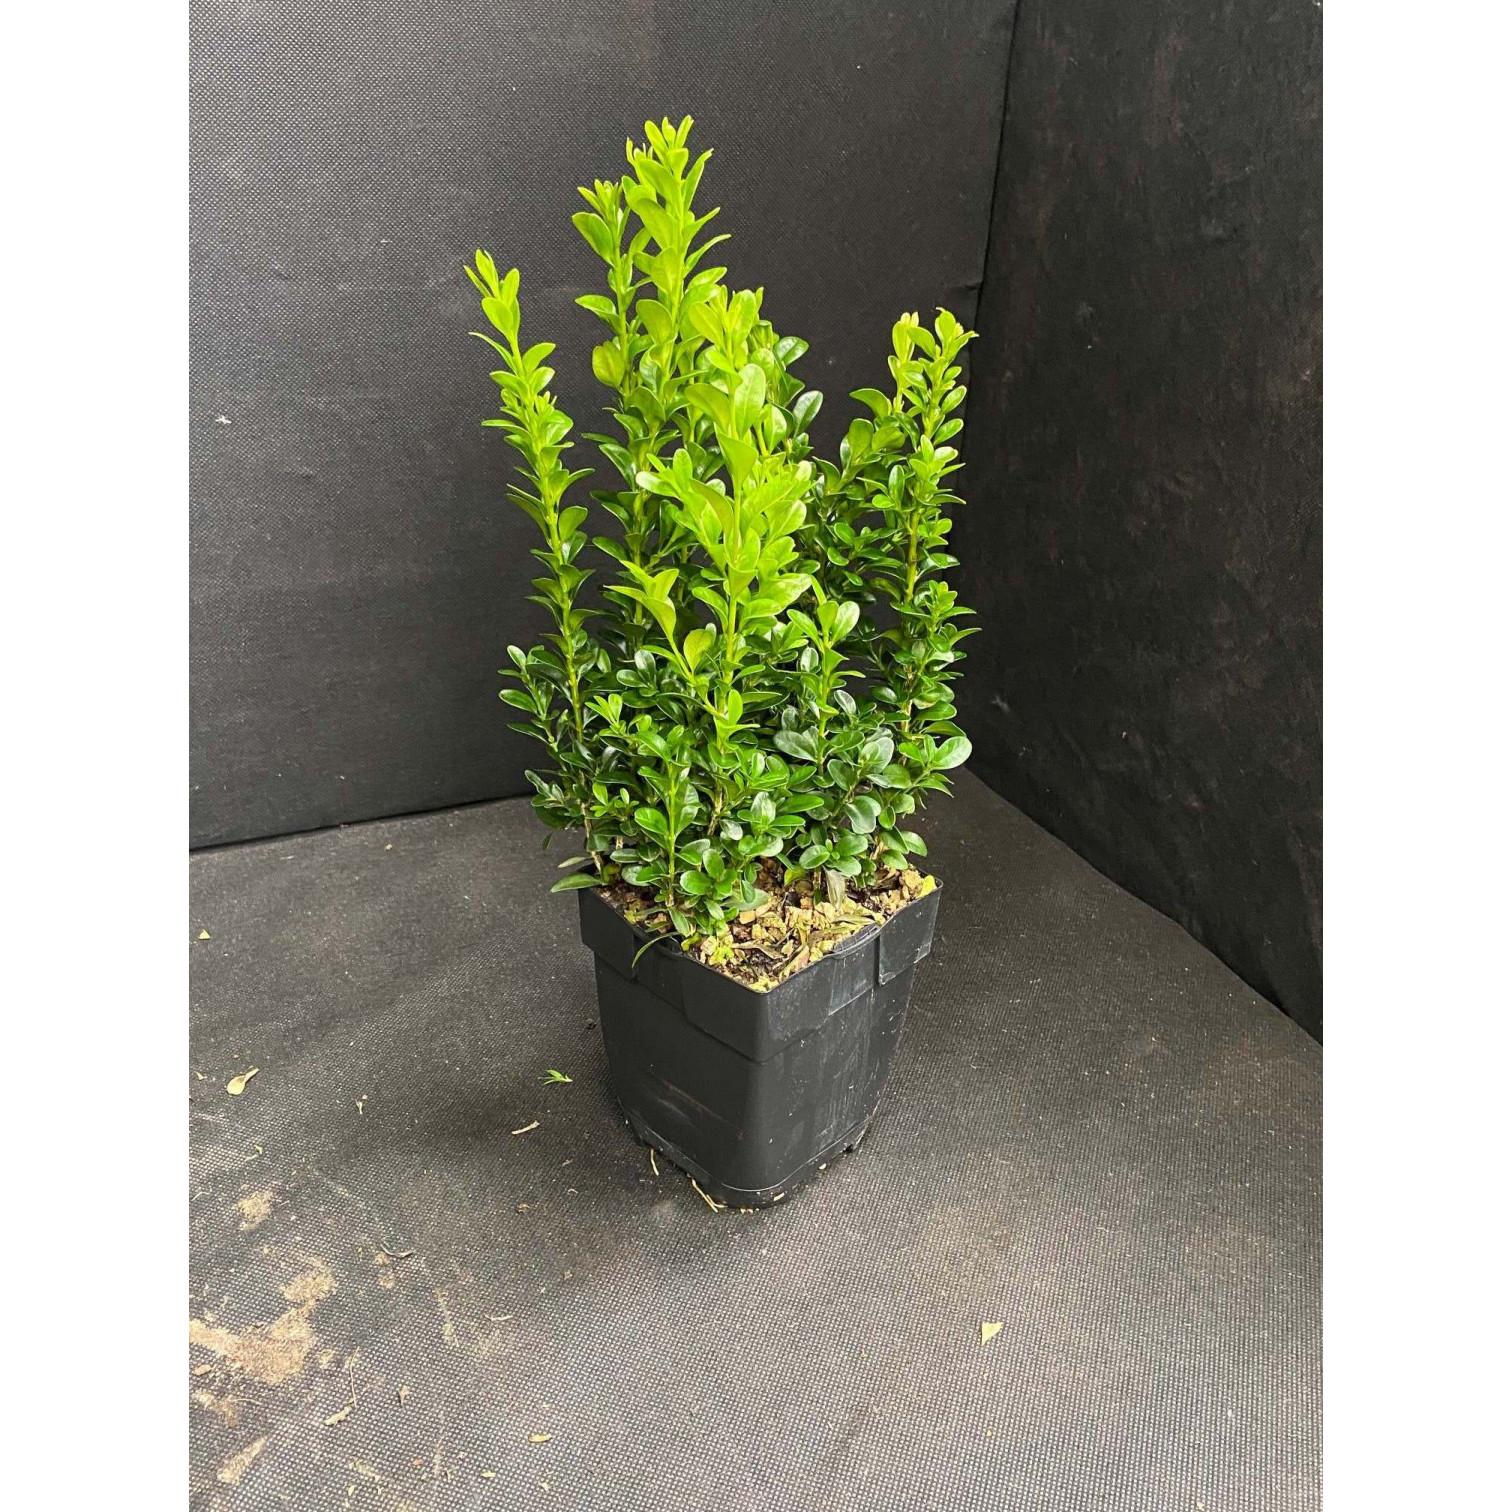 Buxus Bush 30-40cm plant height (not including pot) 2 litre pot